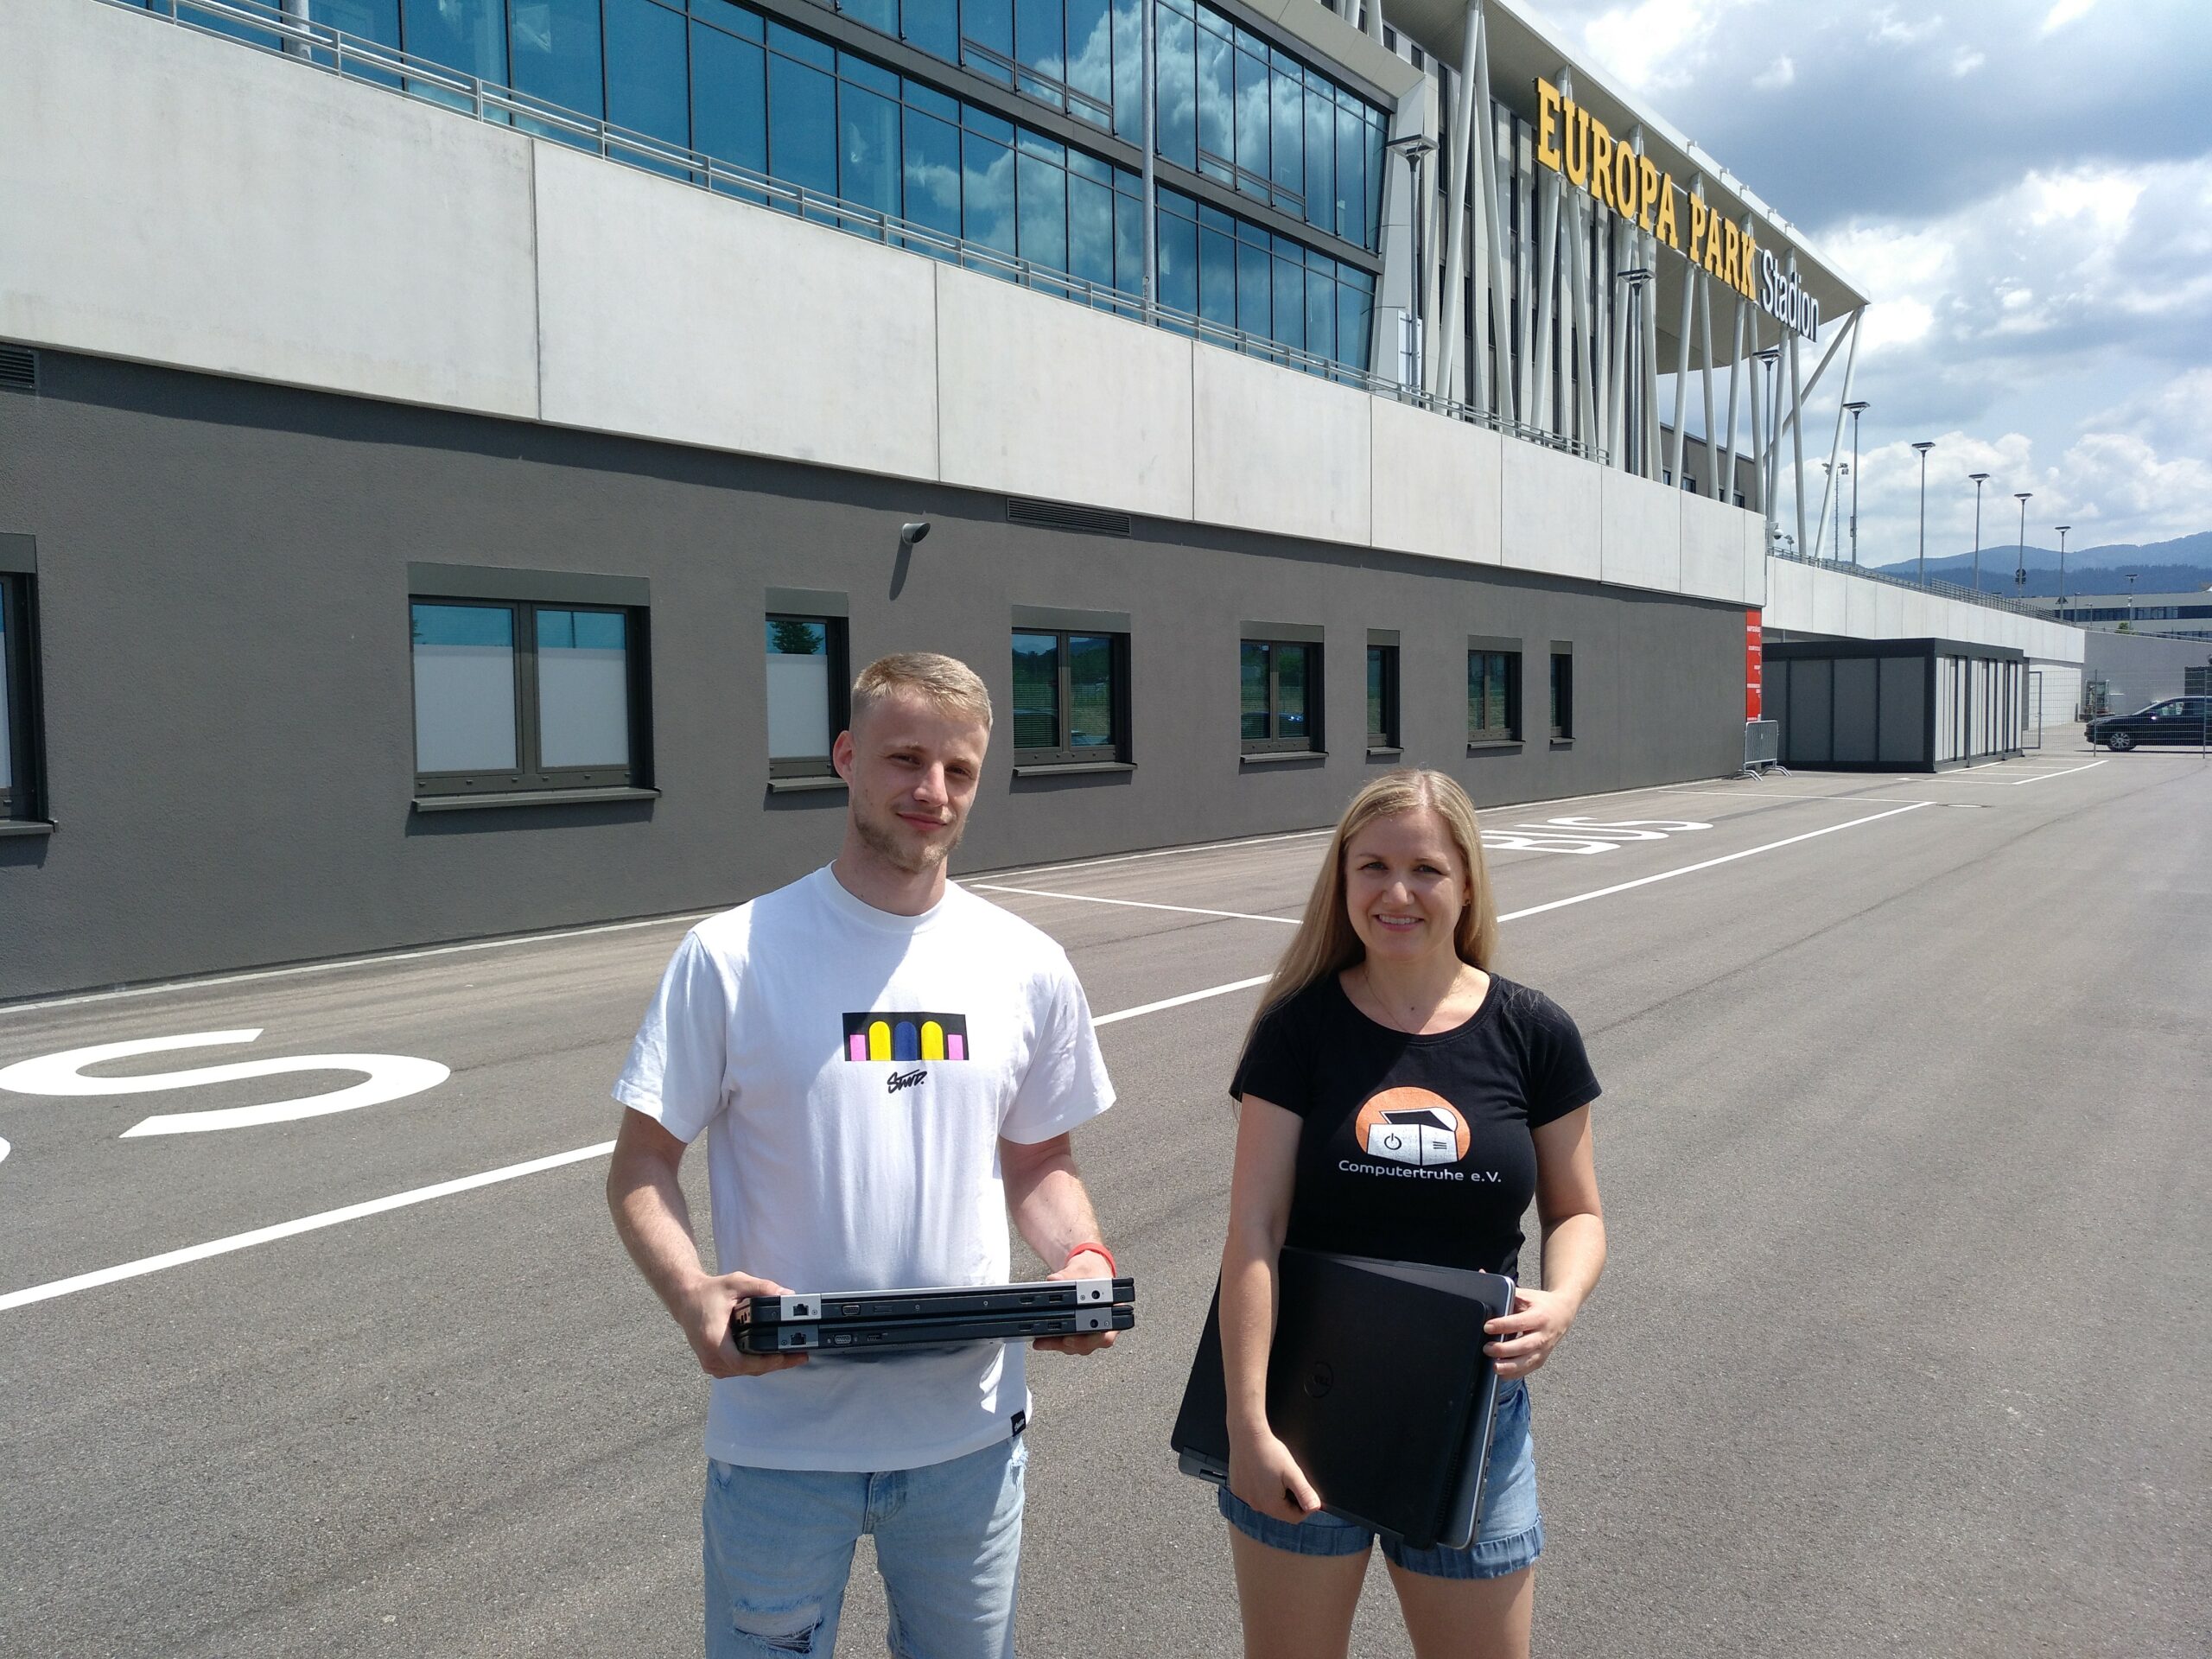 Auf dem Parkplatz, direkt vor dem Europa-Park Stadion, stehen Benedikt Auer und Annette Linder mit einigen Laptops in ihren Händen und lächeln in die Kamera.